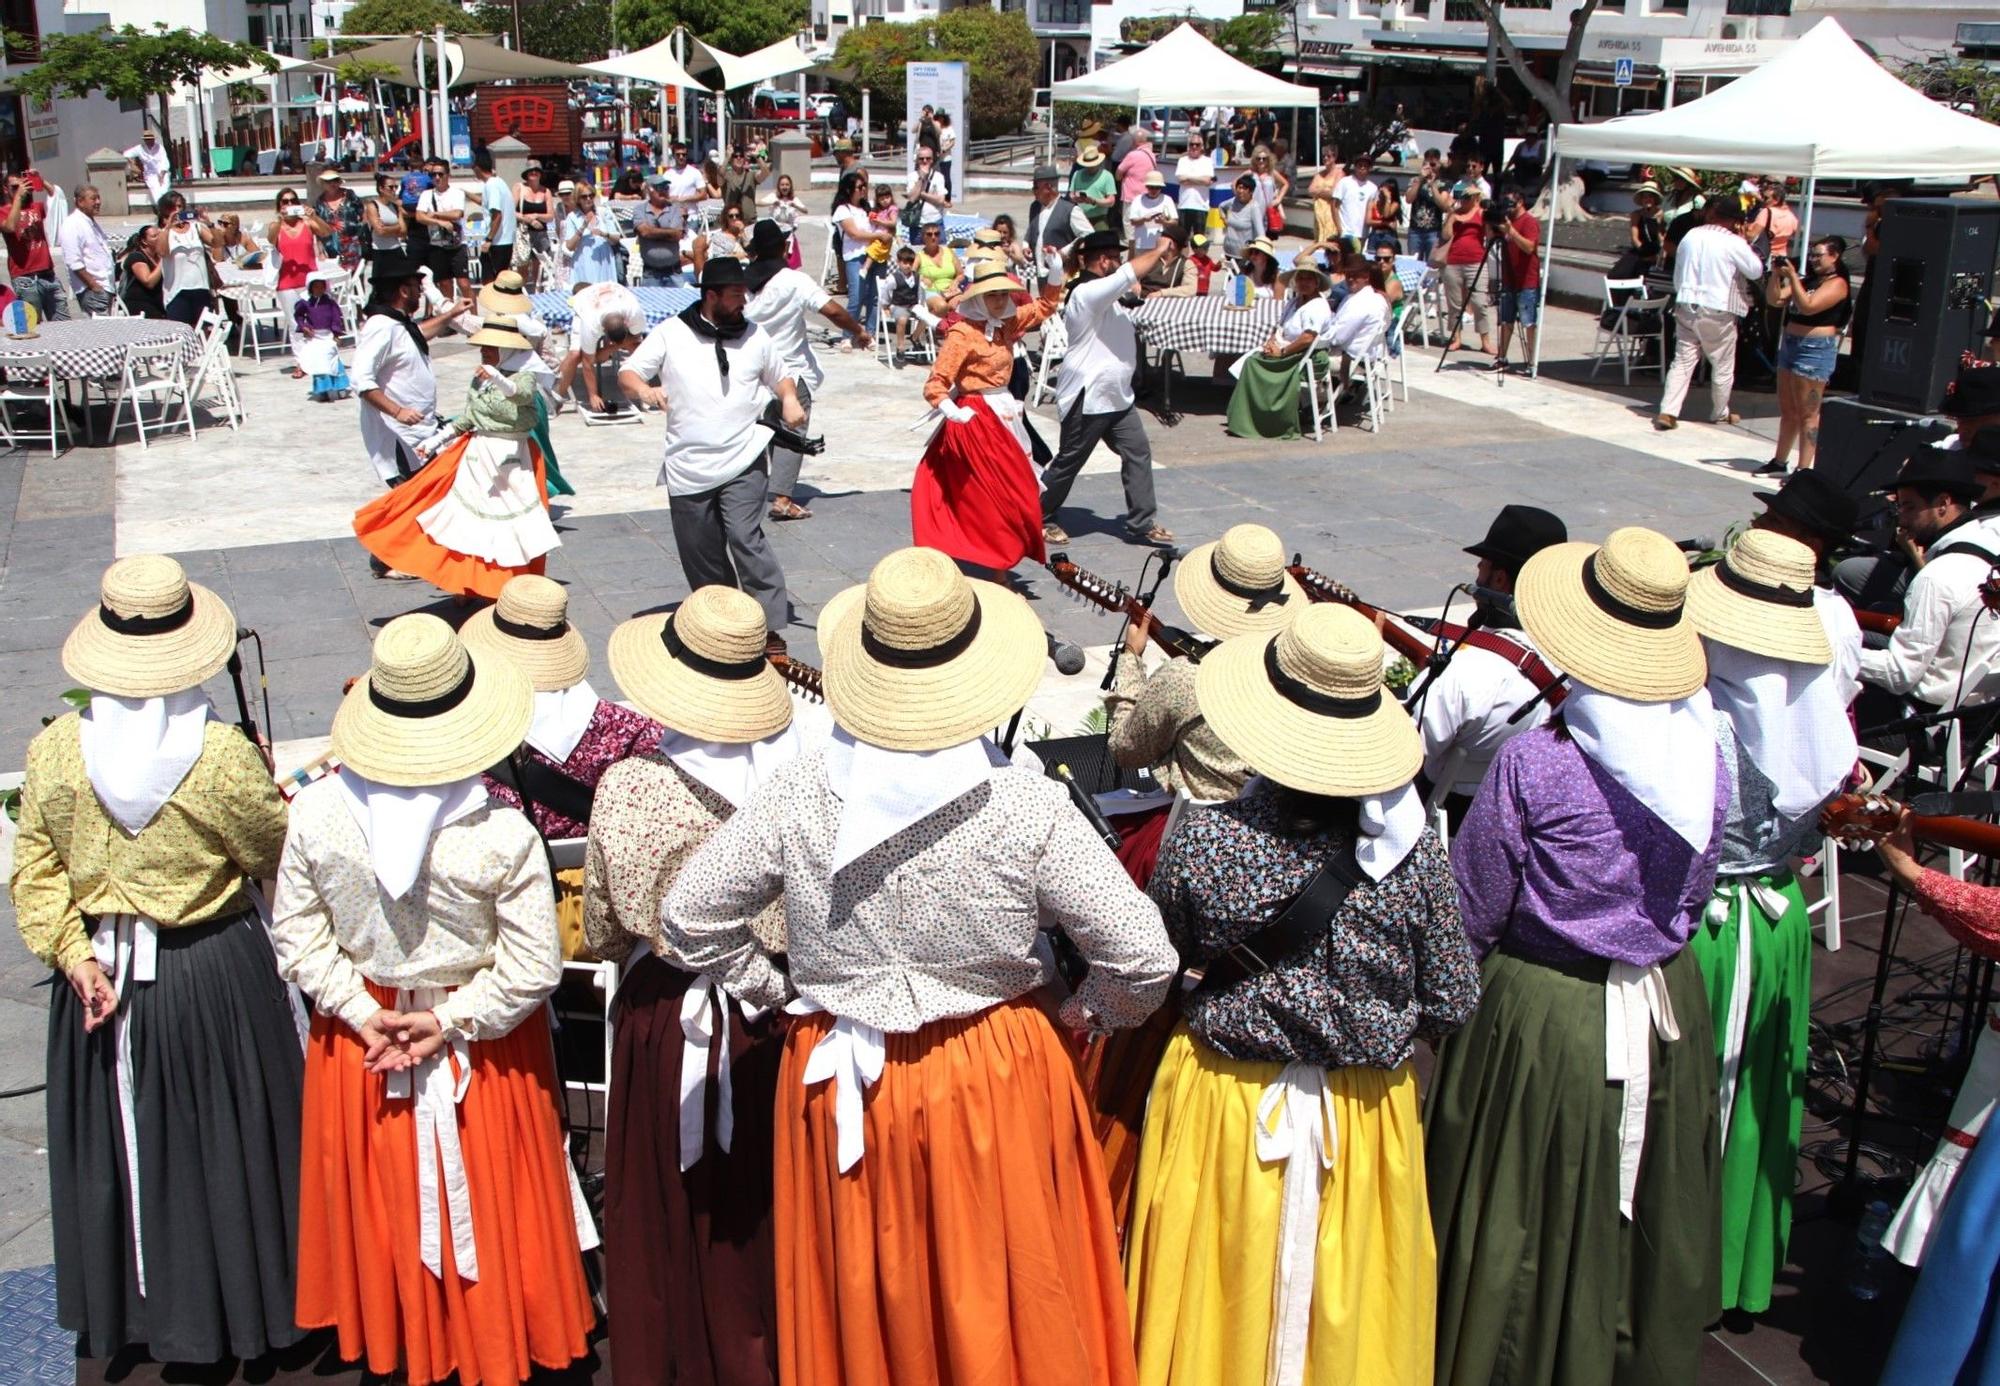 Yaiza celebra el Día de Canarias con un homenaje a las tradiciones y a "nuestra gente"